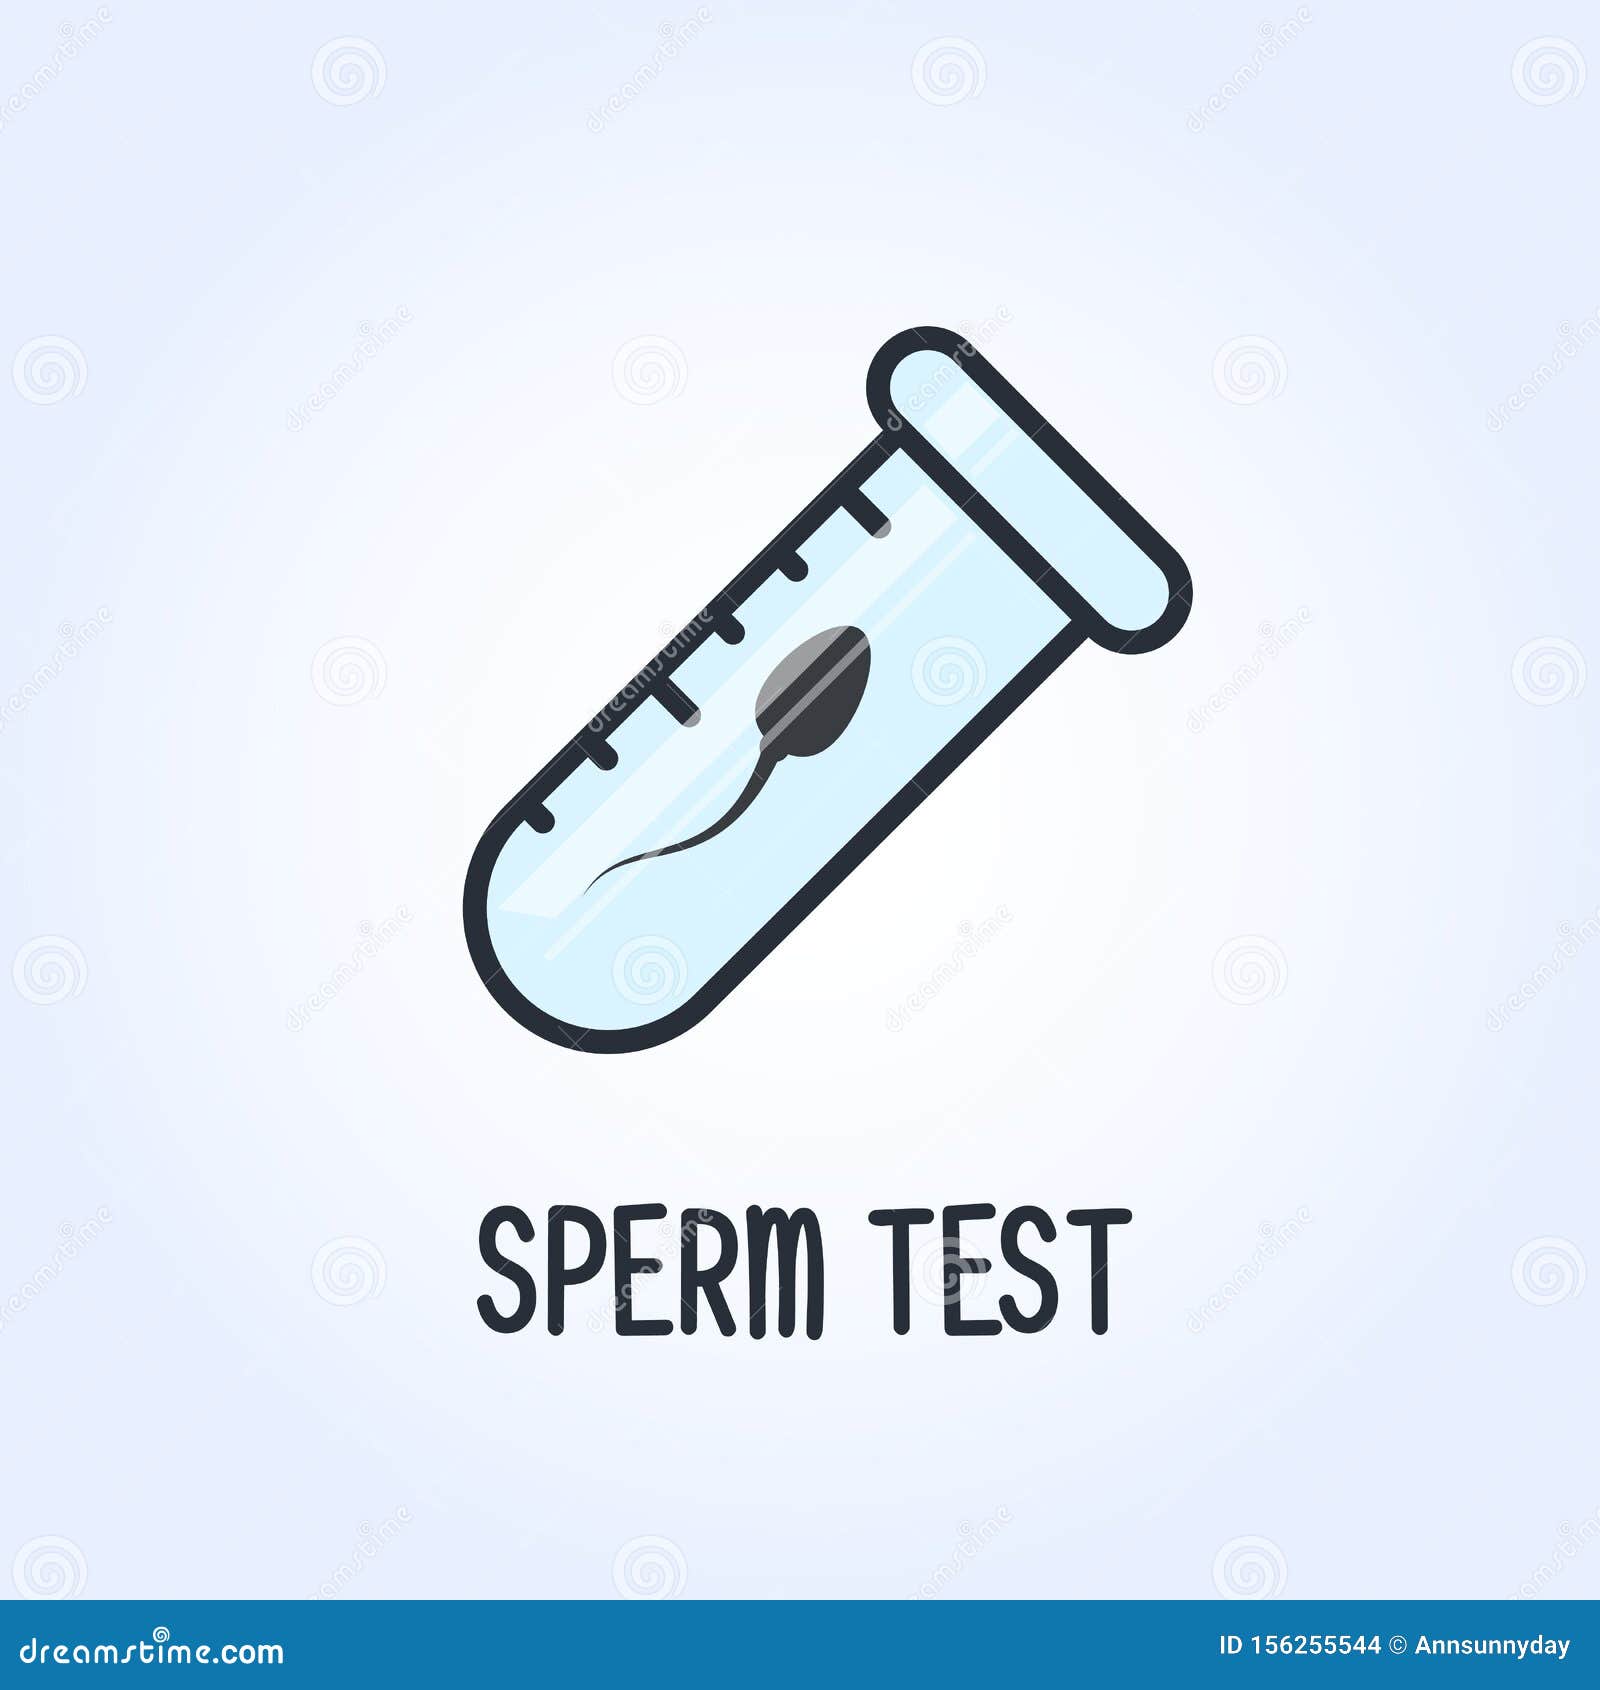 Анализ спермограммы: исследование спермы